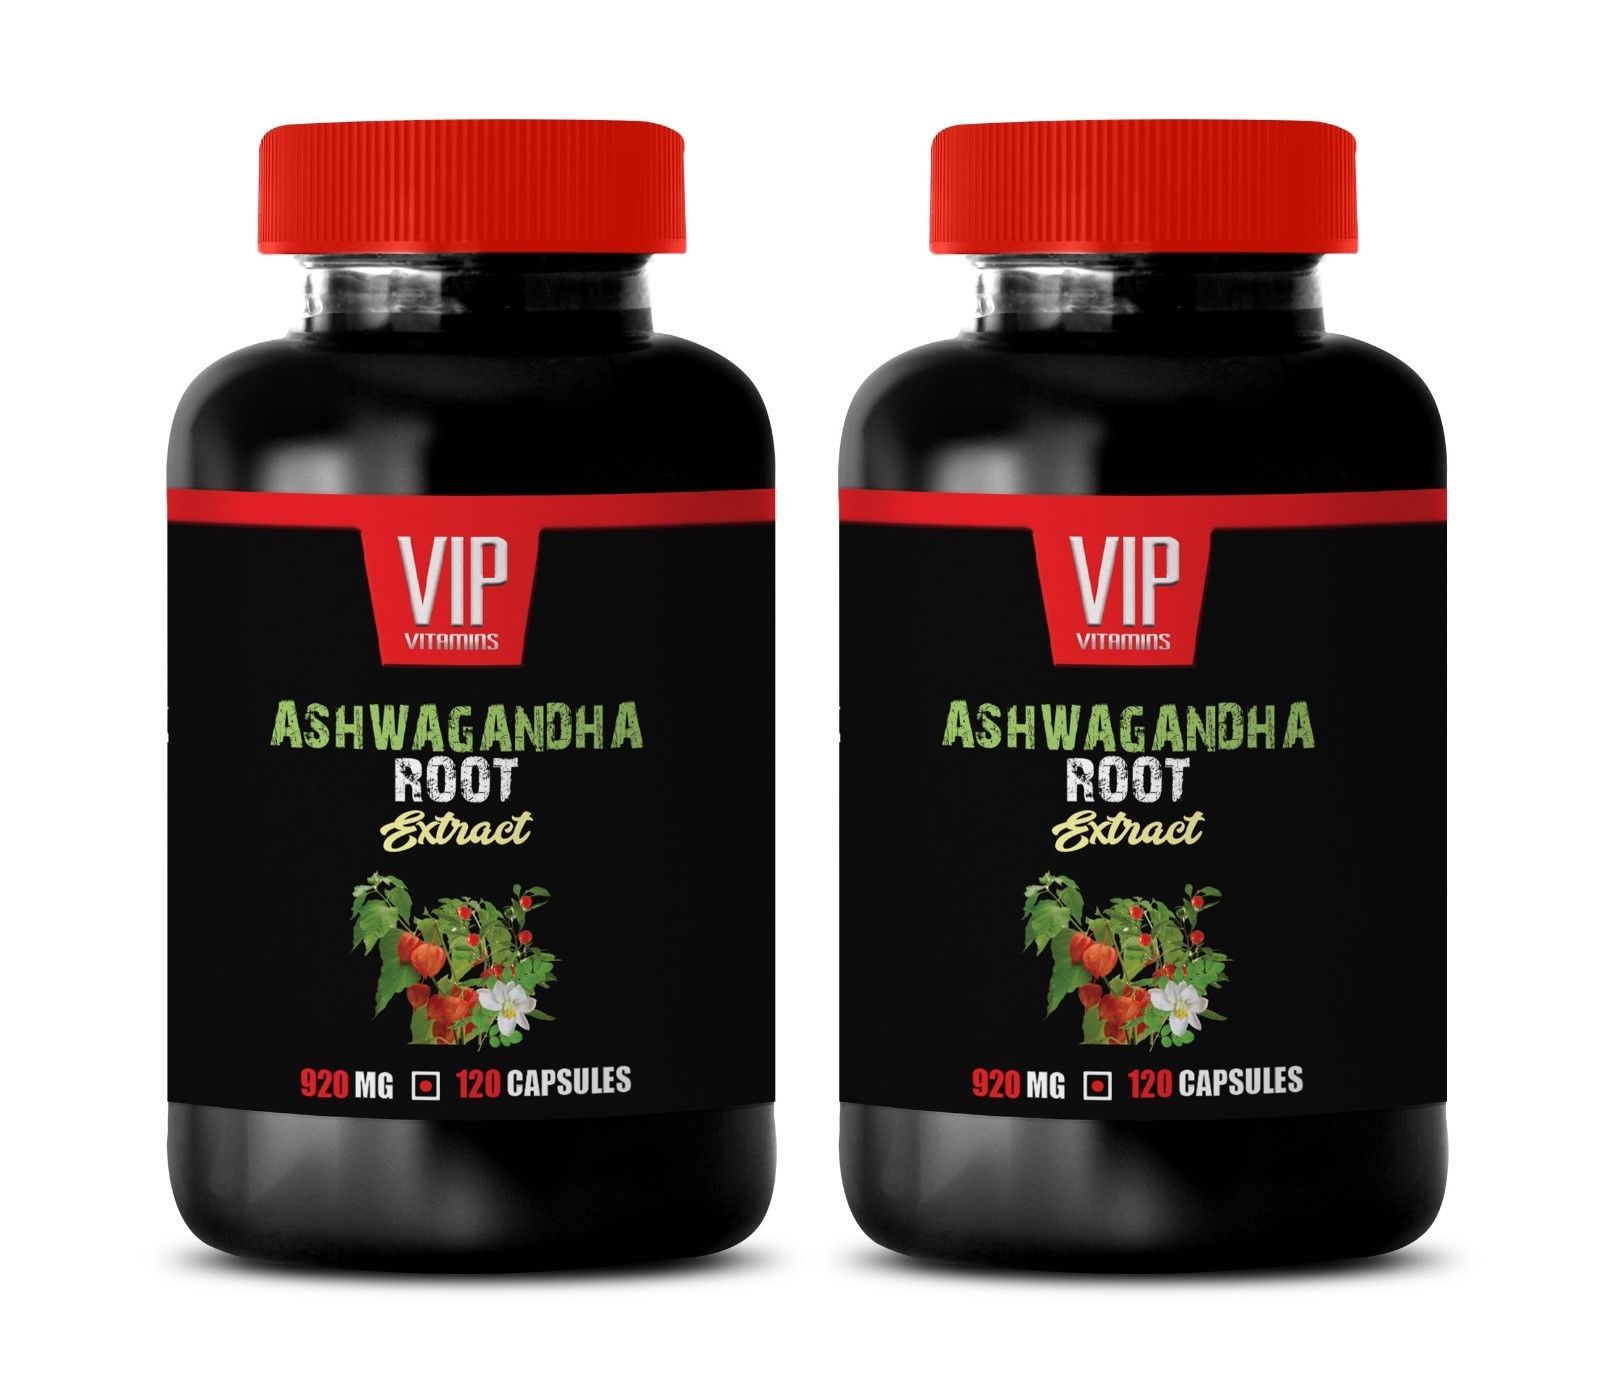 ancient medicinal herb - ASHWAGANDHA ROOT EXTRACT 920mg - ashwagandha powder 2B - $24.27